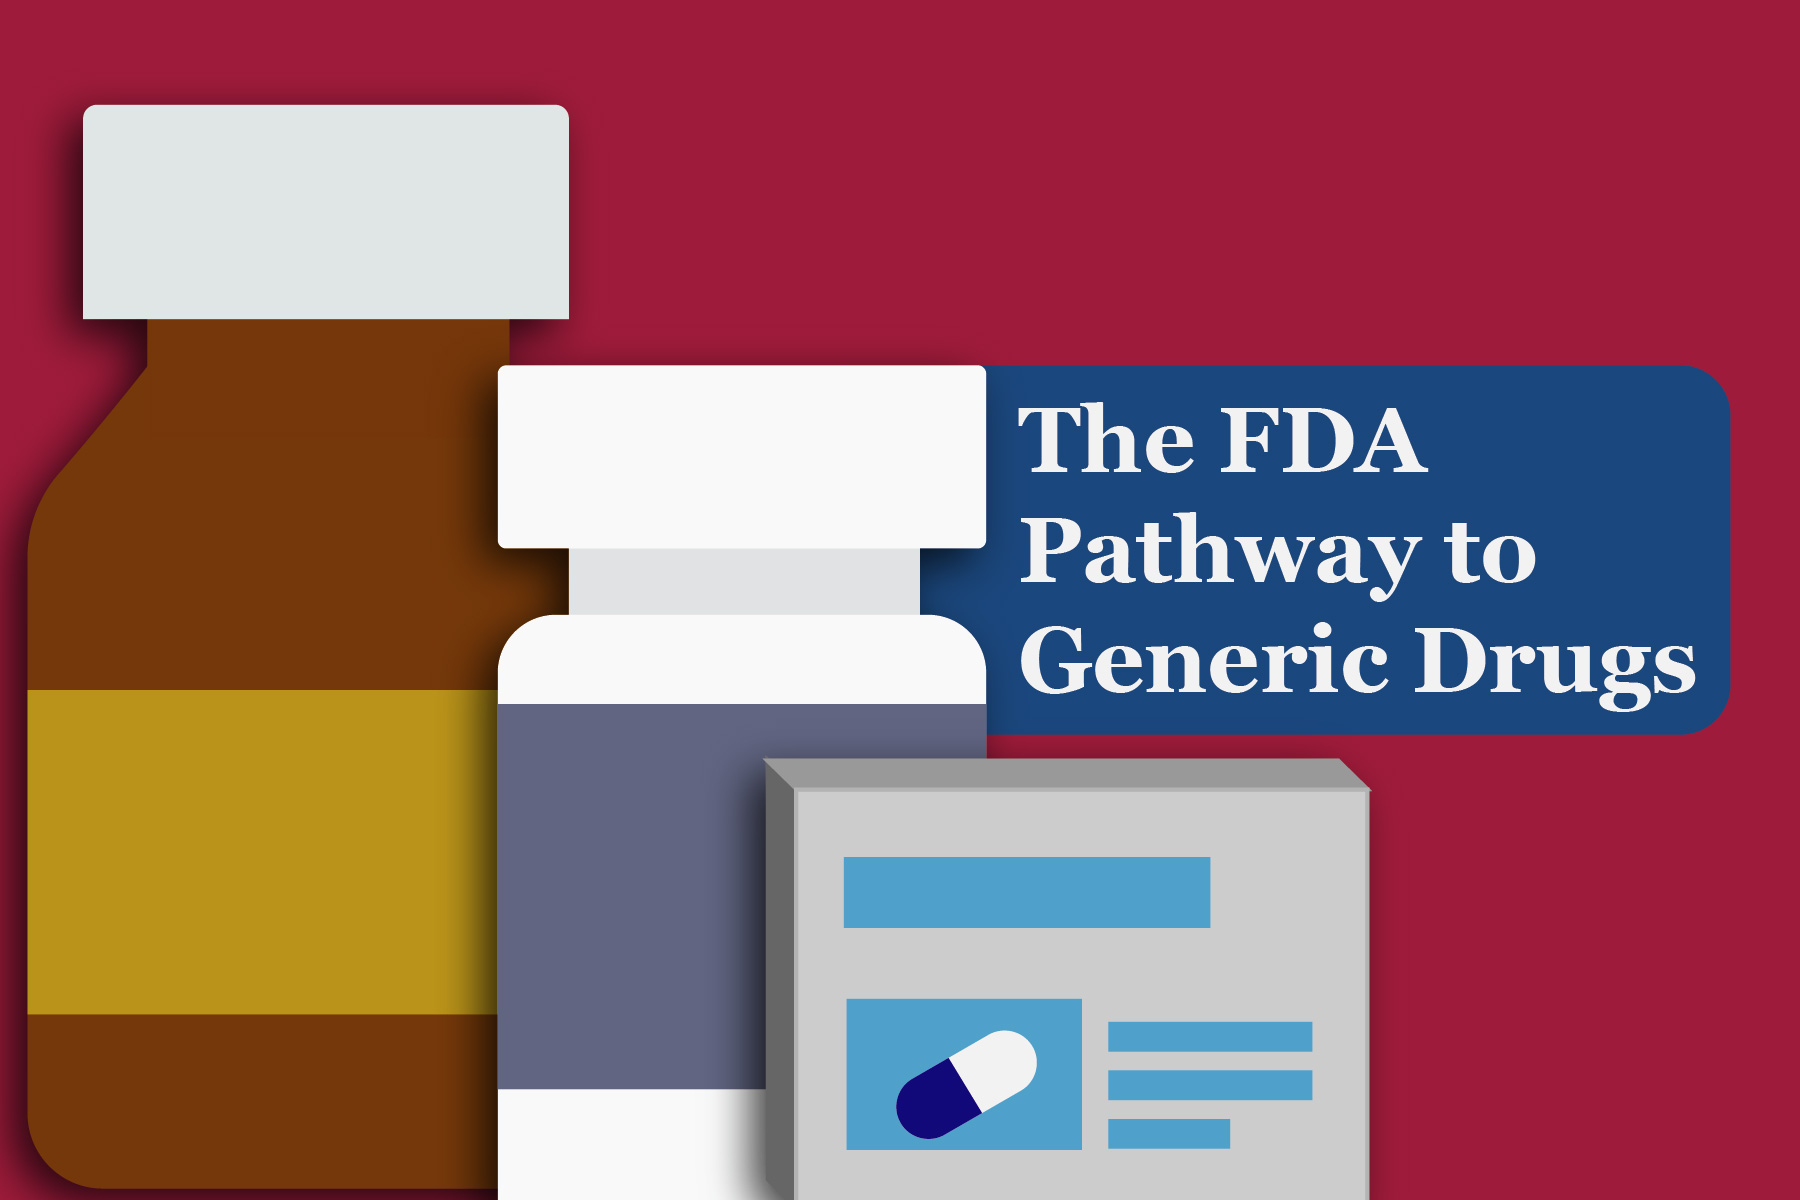 The FDA Pathway to Generic Drugs